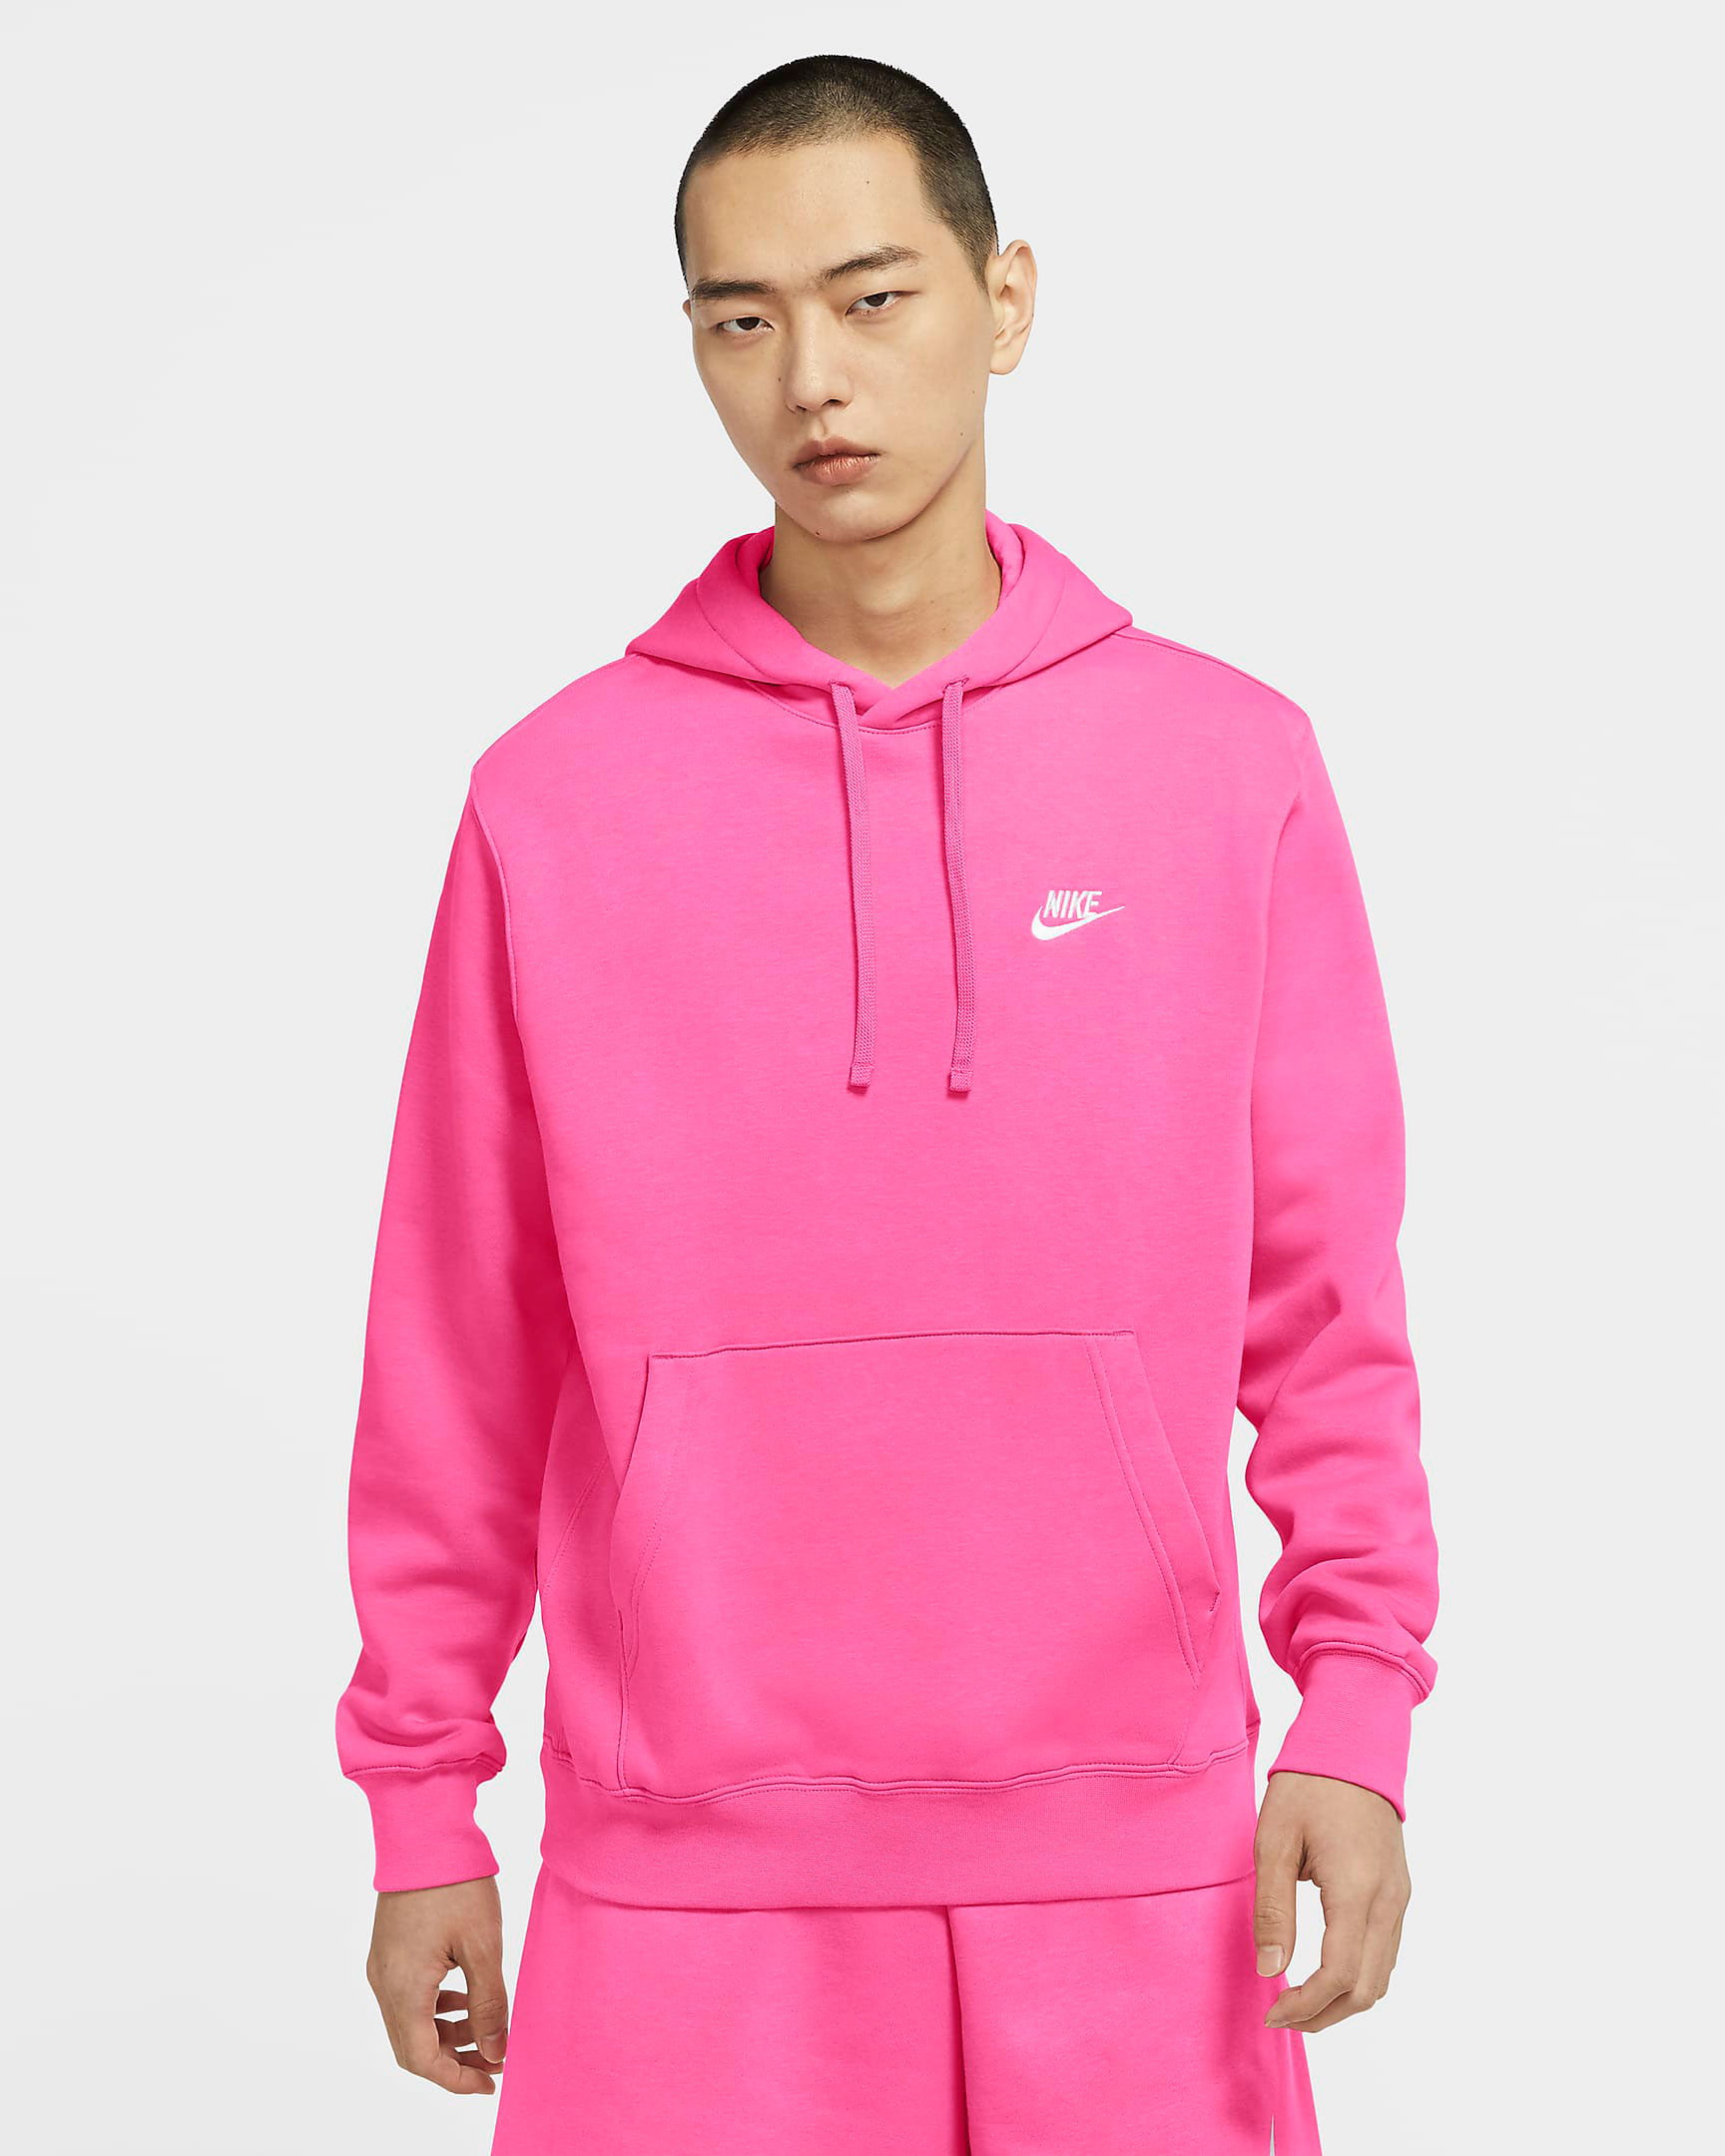 racer pink hoodie